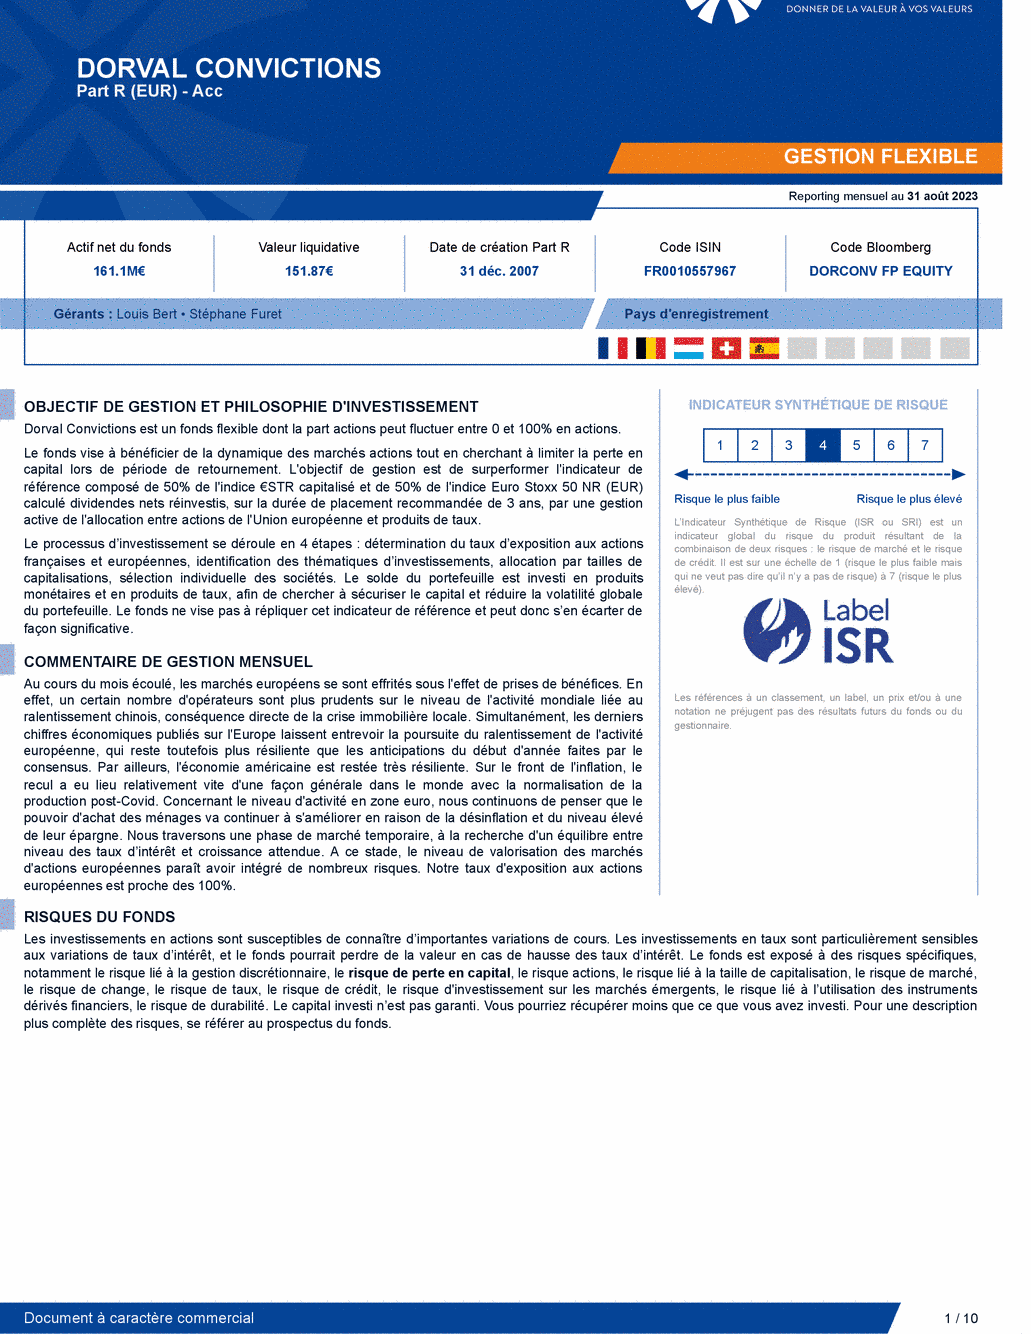 Reporting DORVAL CONVICTIONS P - 31/08/2023 - Français